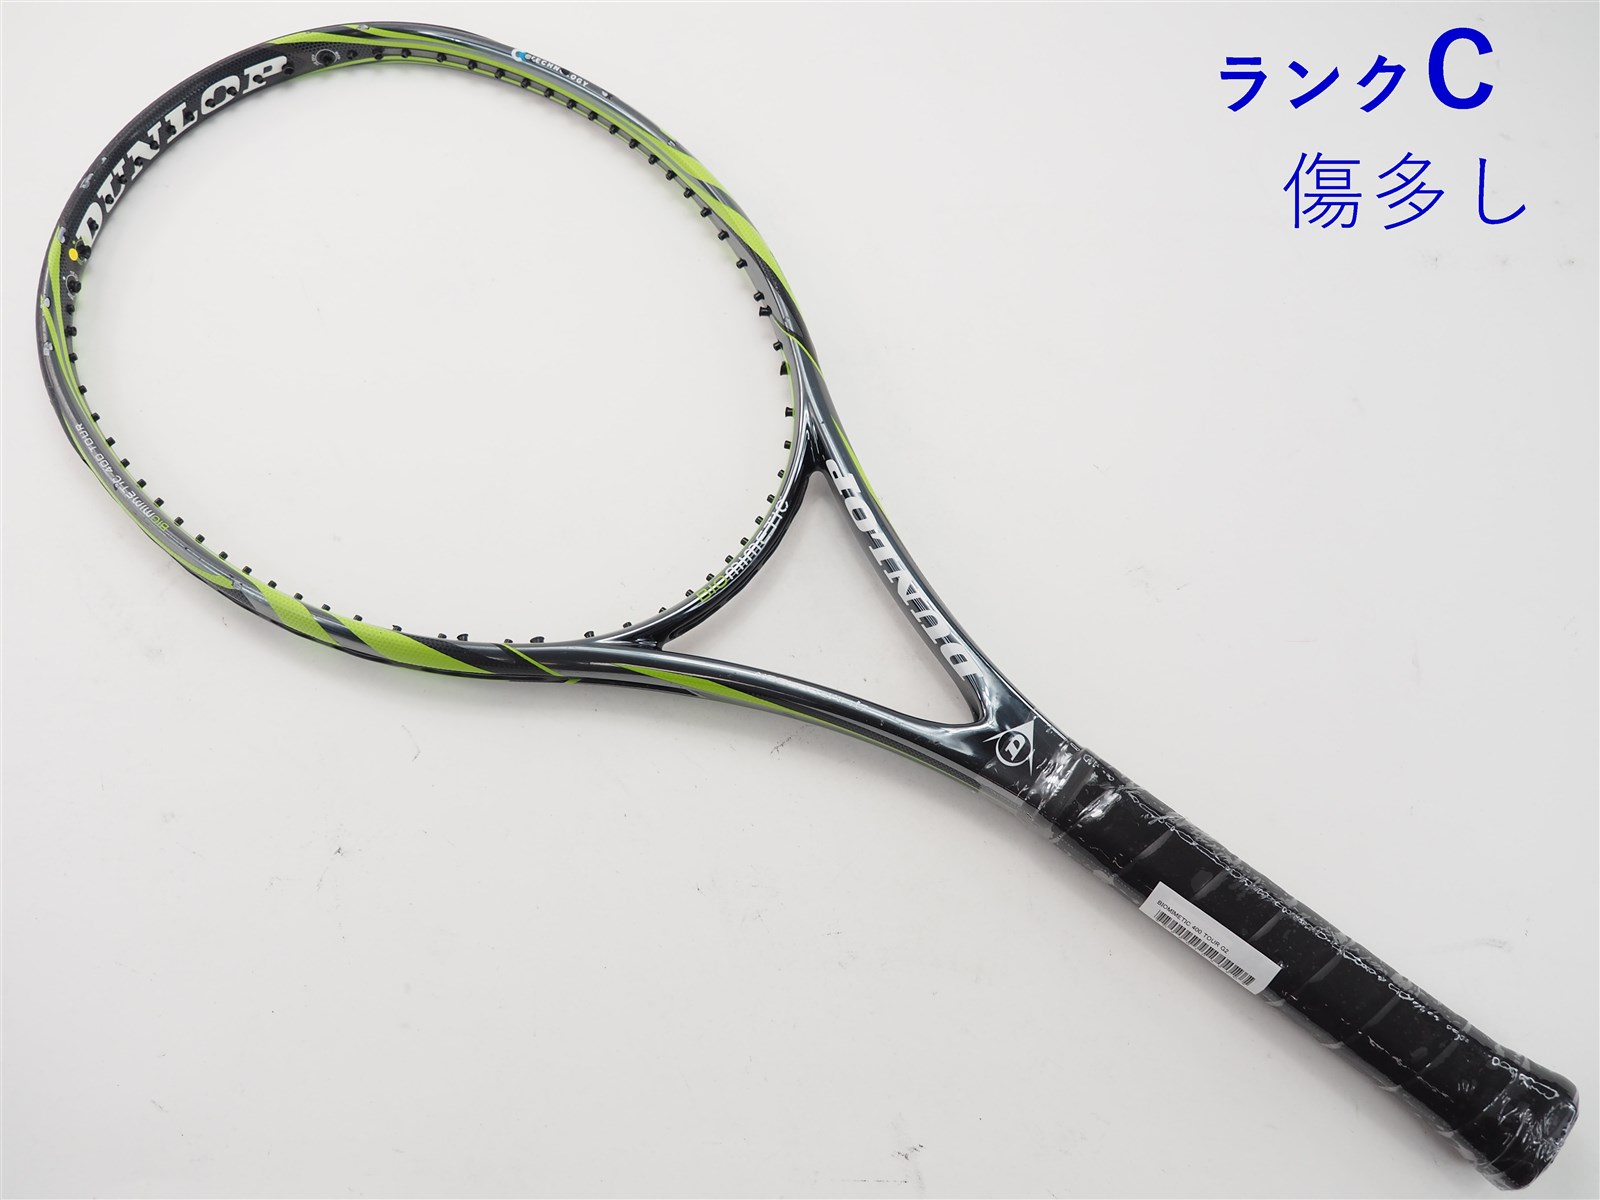 テニスラケット ダンロップ バイオミメティック 500 ツアー 2010年モデル (G2)DUNLOP BIOMIMETIC 500 TOUR 2010100平方インチ長さ